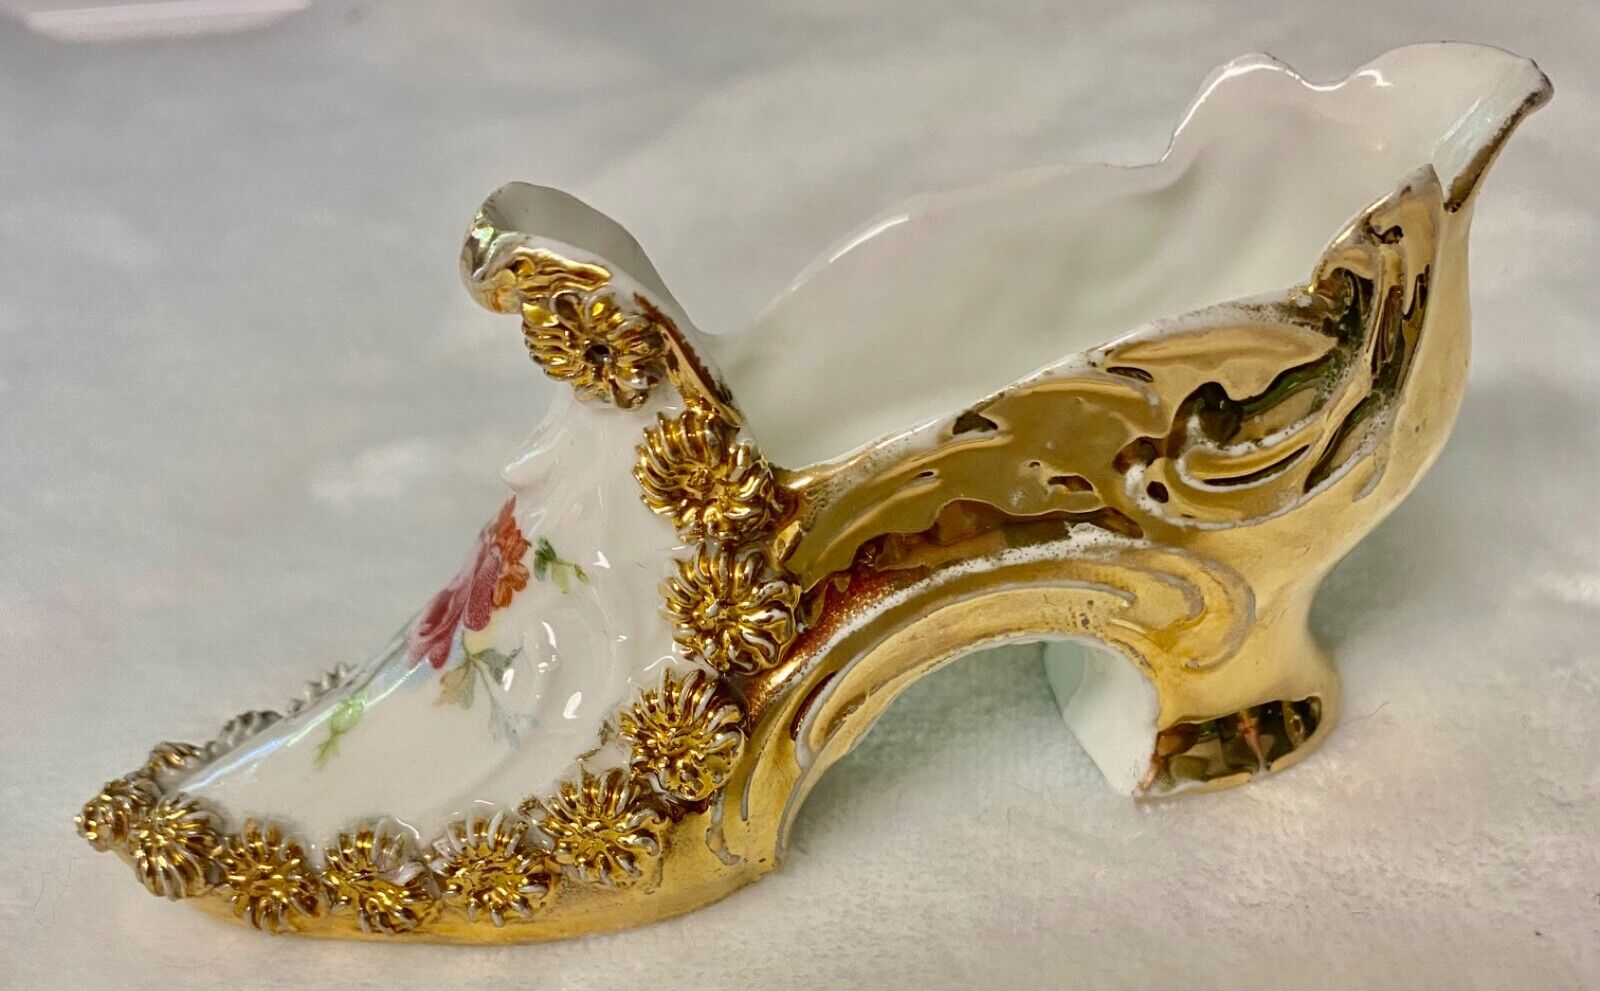 Vintage Porcelain Gold Trimmed Slipper/Shoe with Flowers